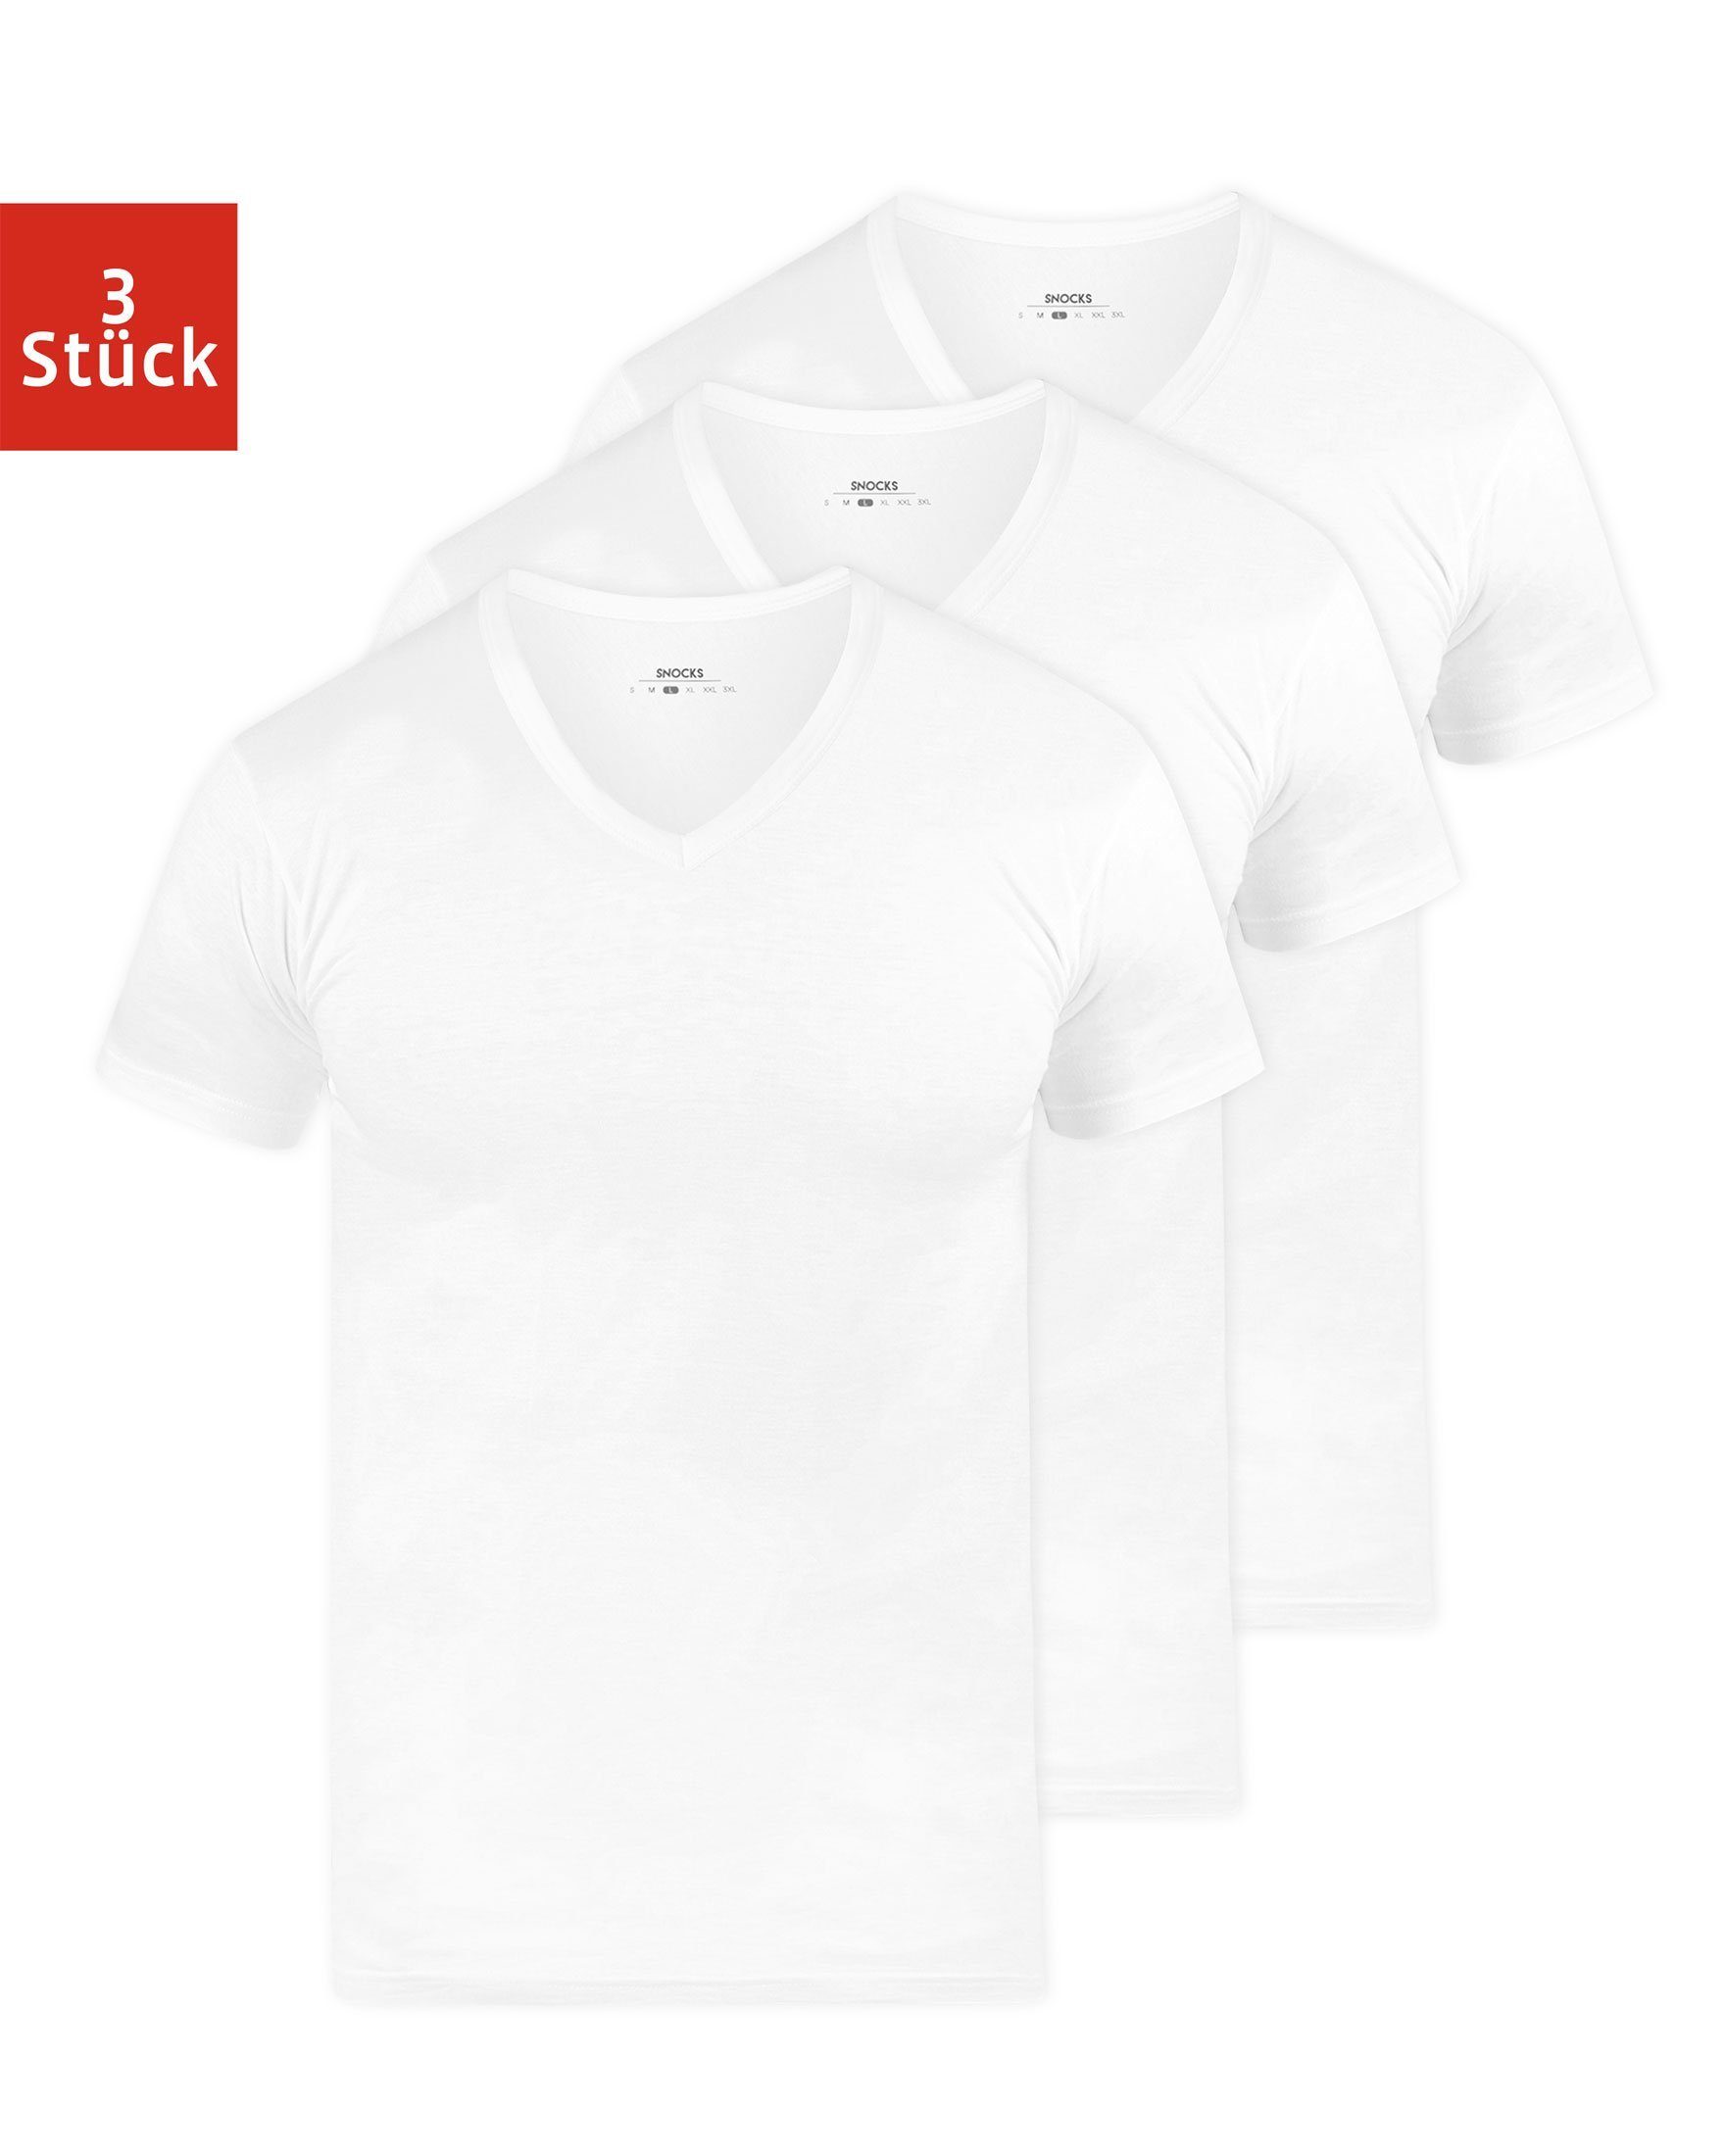 SNOCKS Unterziehshirt »T Shirt mit V-Ausschnitt Unterhemden Herren« (3 St),  aus Bio-Baumwolle, extra lang geschnitten online kaufen | OTTO